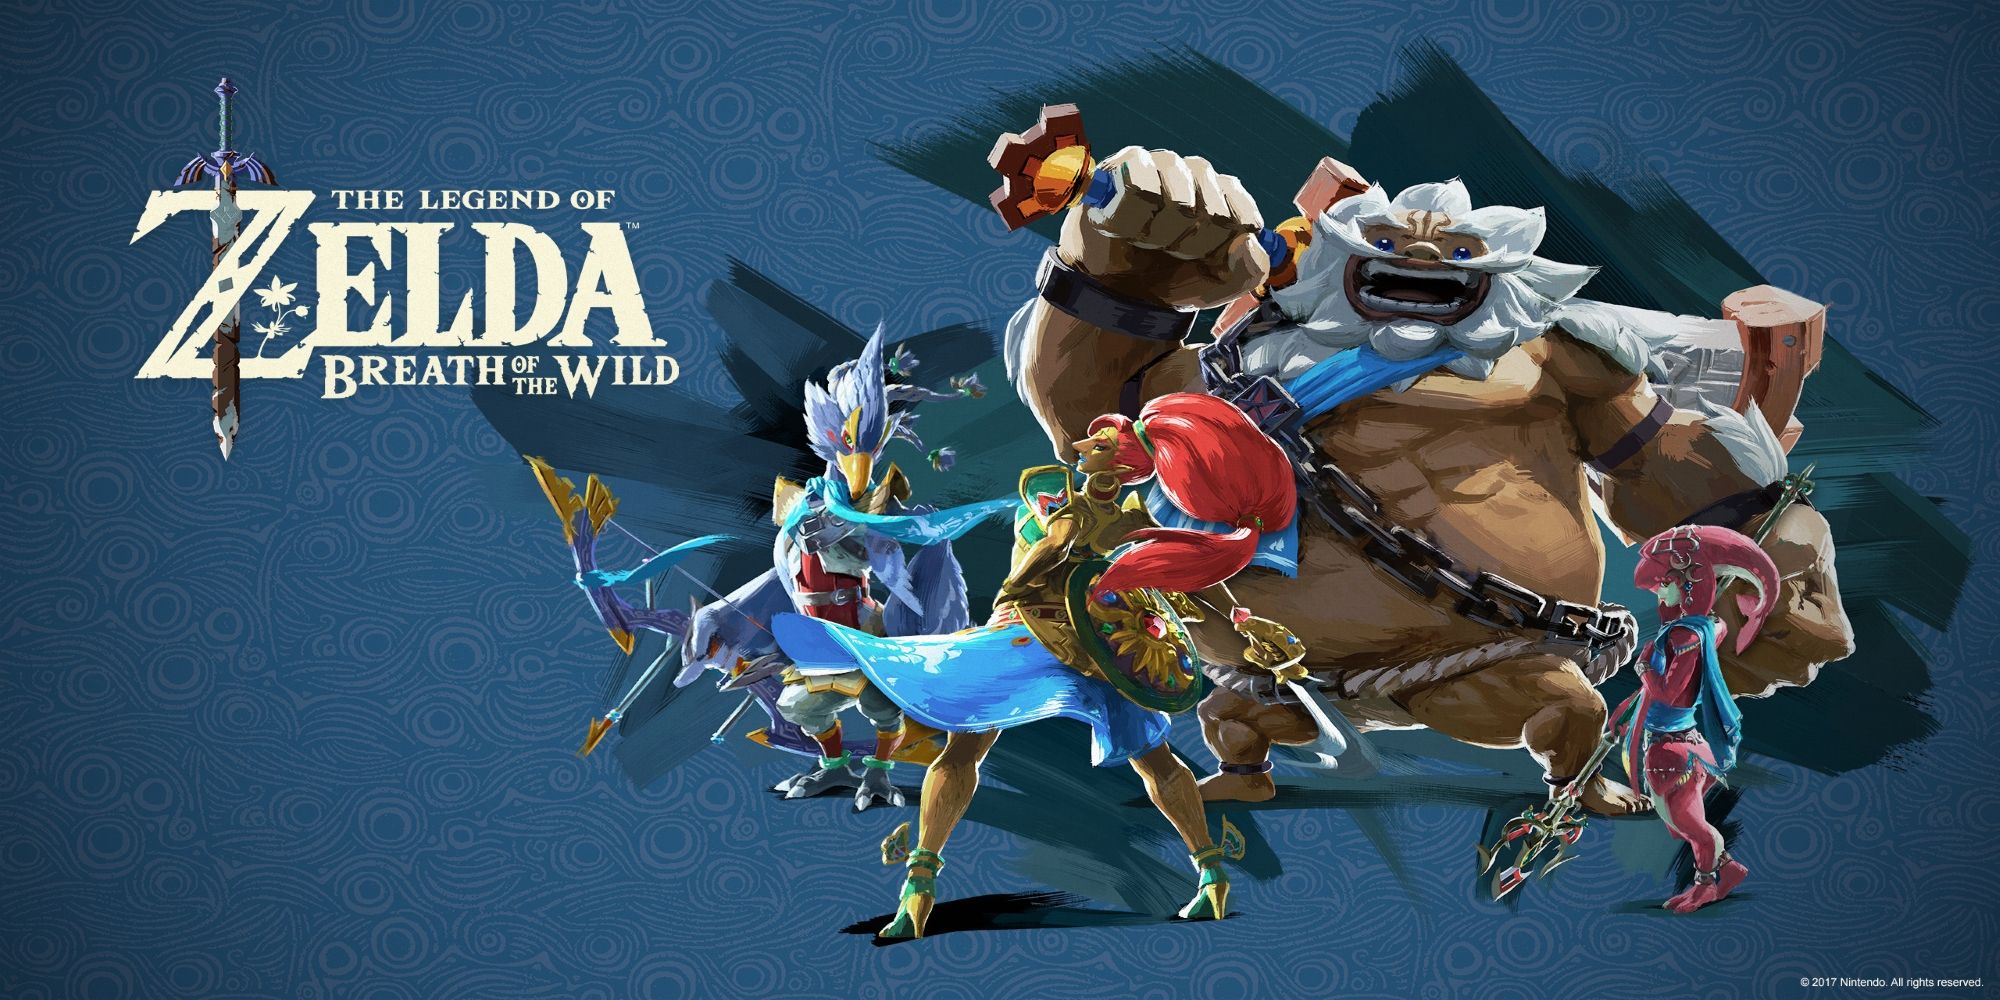 Os campeões de The Legend of Zelda: Breath of the Wild, Revali, Urbosa, Daruk e Mipha posam em frente a um fundo azul.